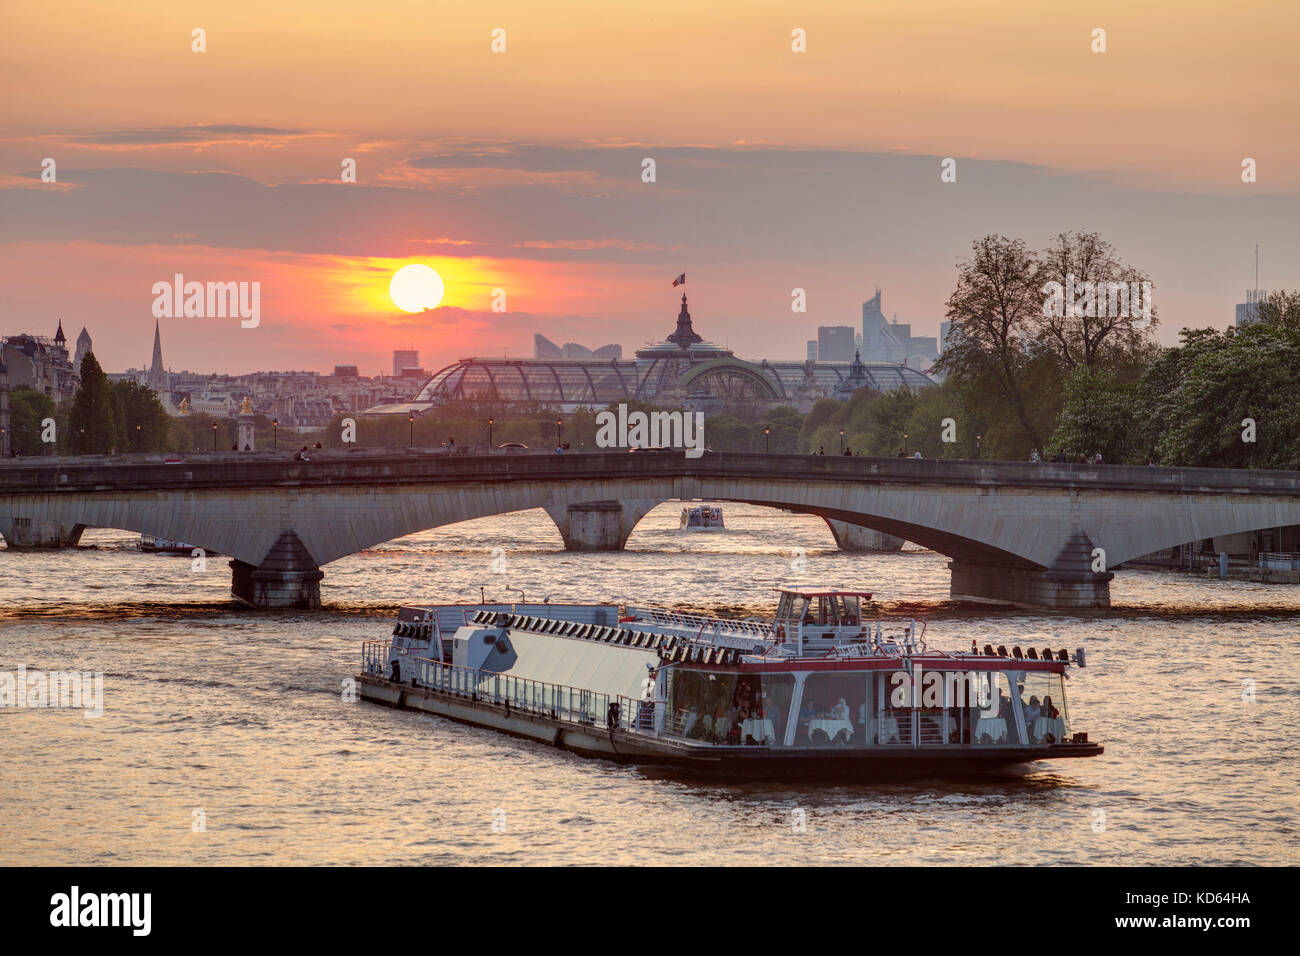 París (Francia): el atardecer en la ciudad capital. Turismo en barco por el río Sena y el techo de cristal del Grand Palais de París 8th arrondissement / d Foto de stock